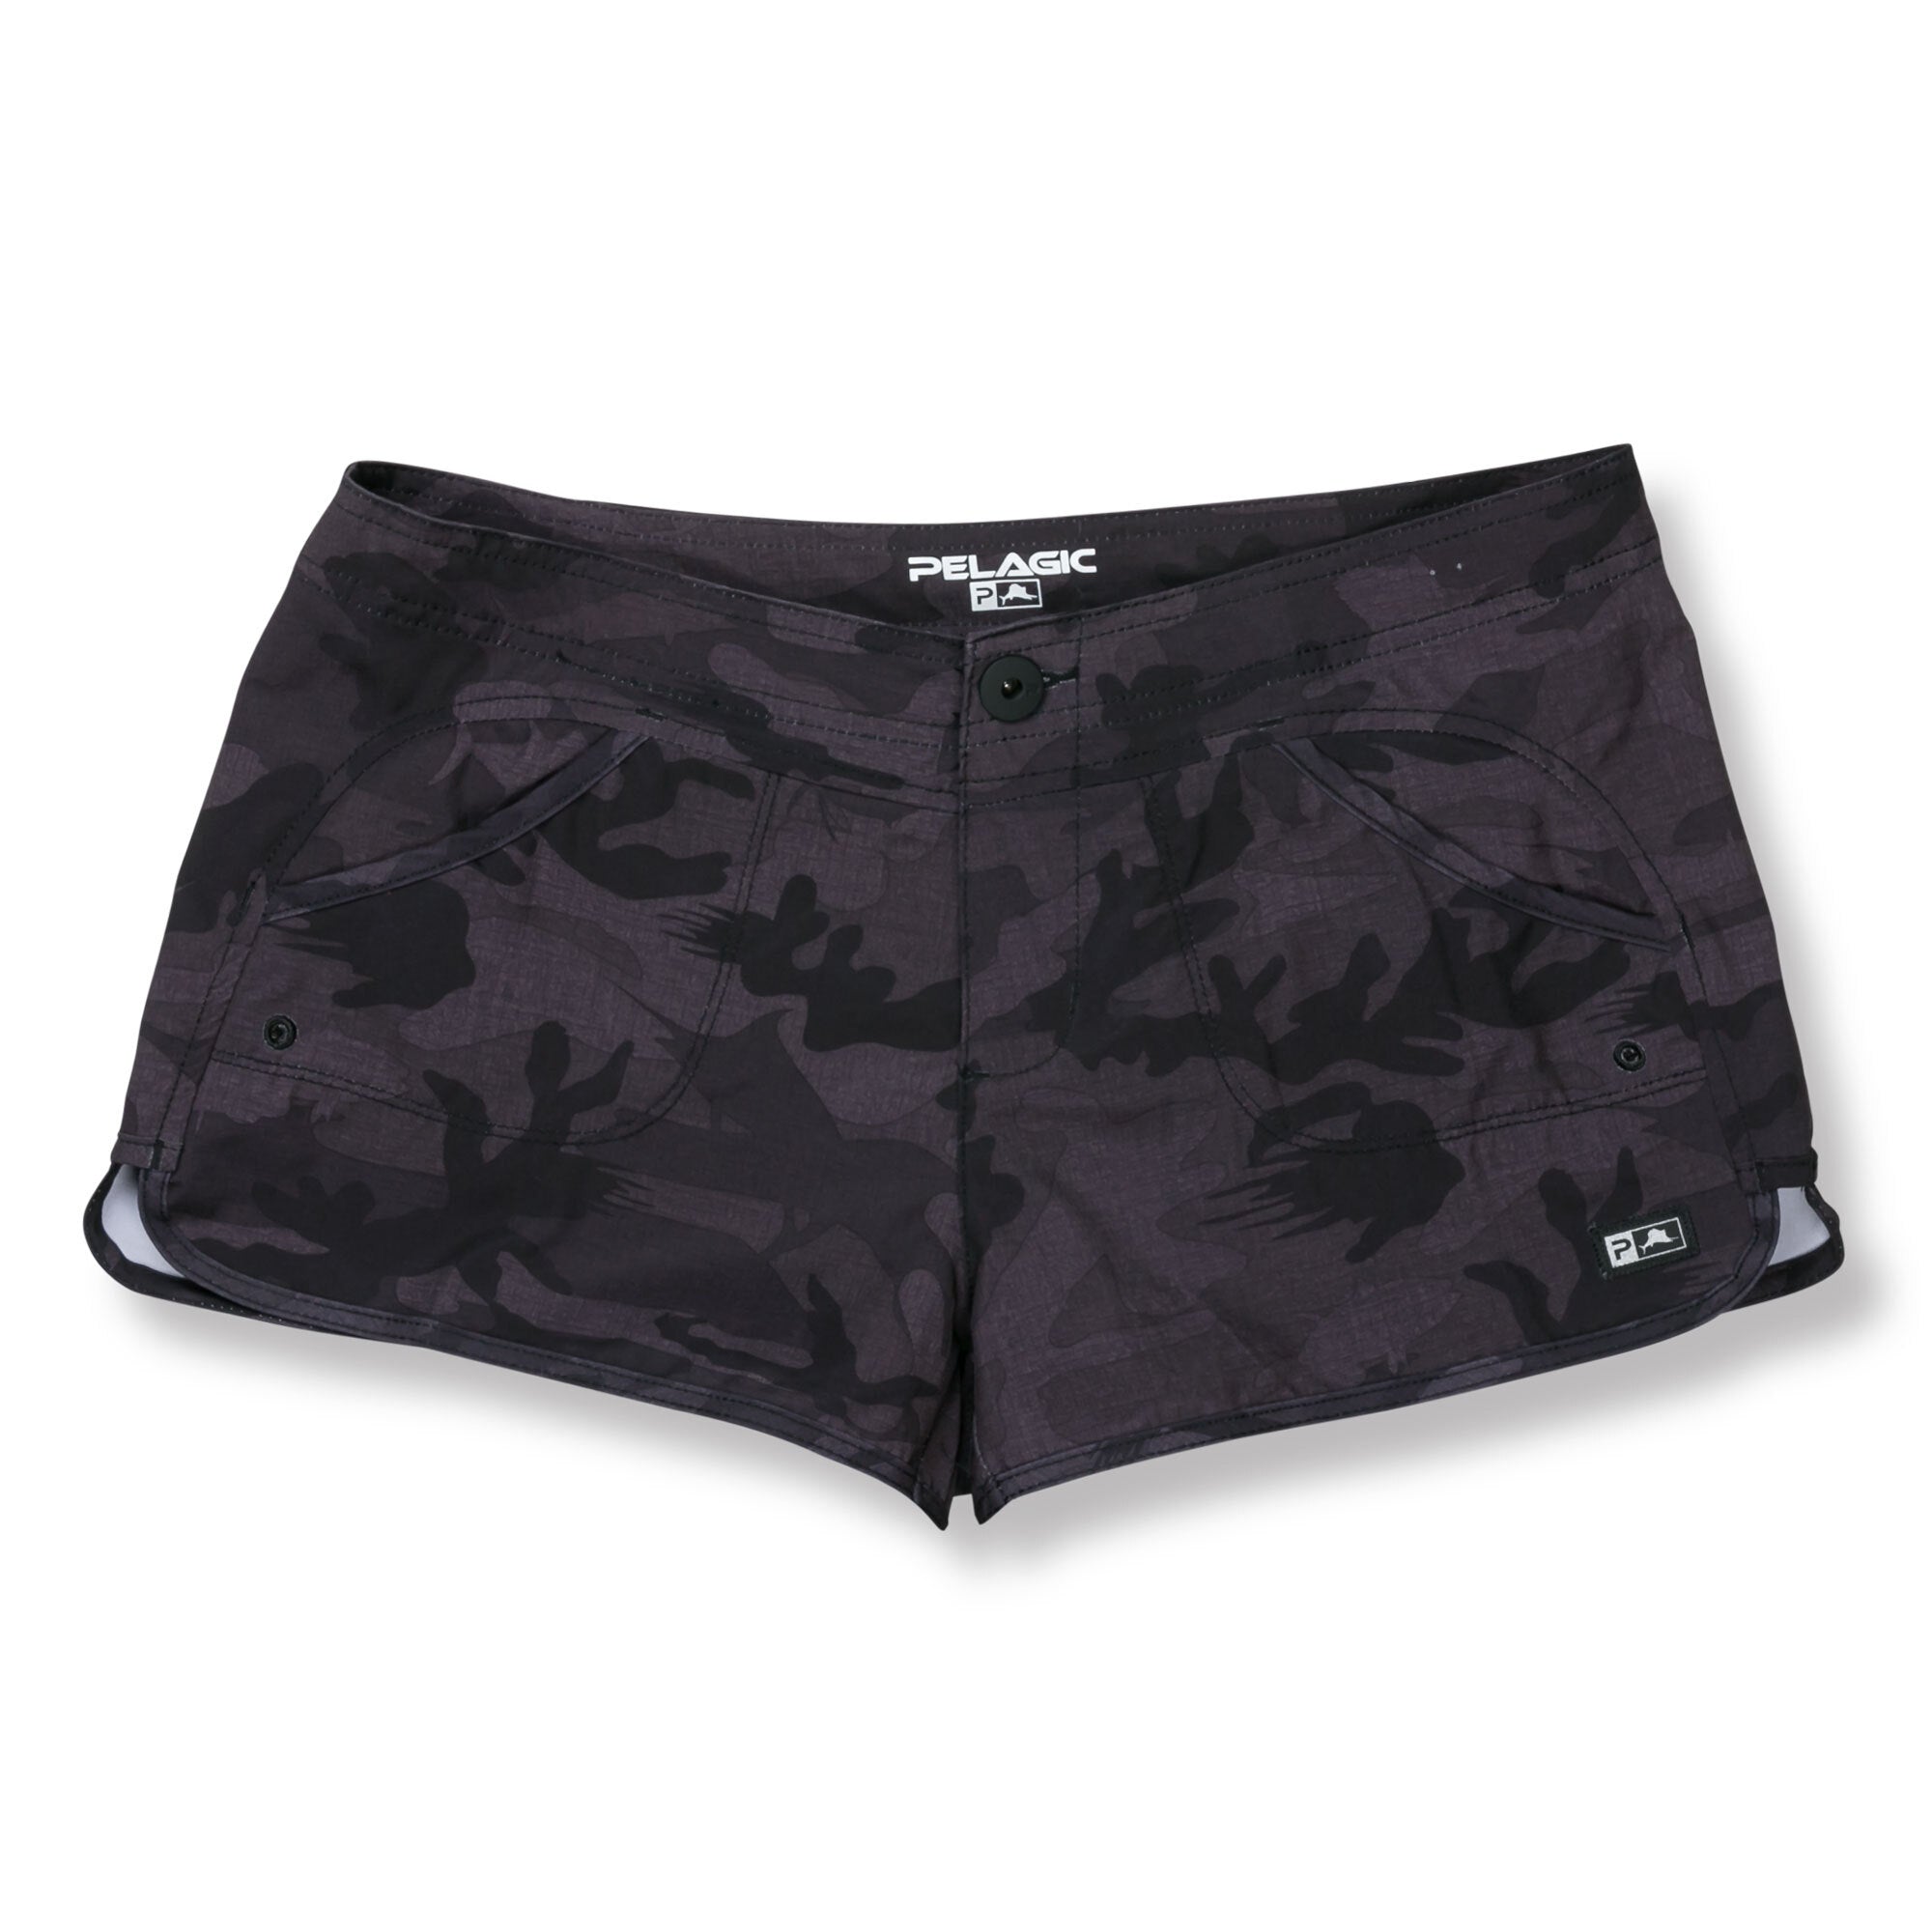 Pelagic Hybrid Shorts - Moana Fish Camo - Black 4